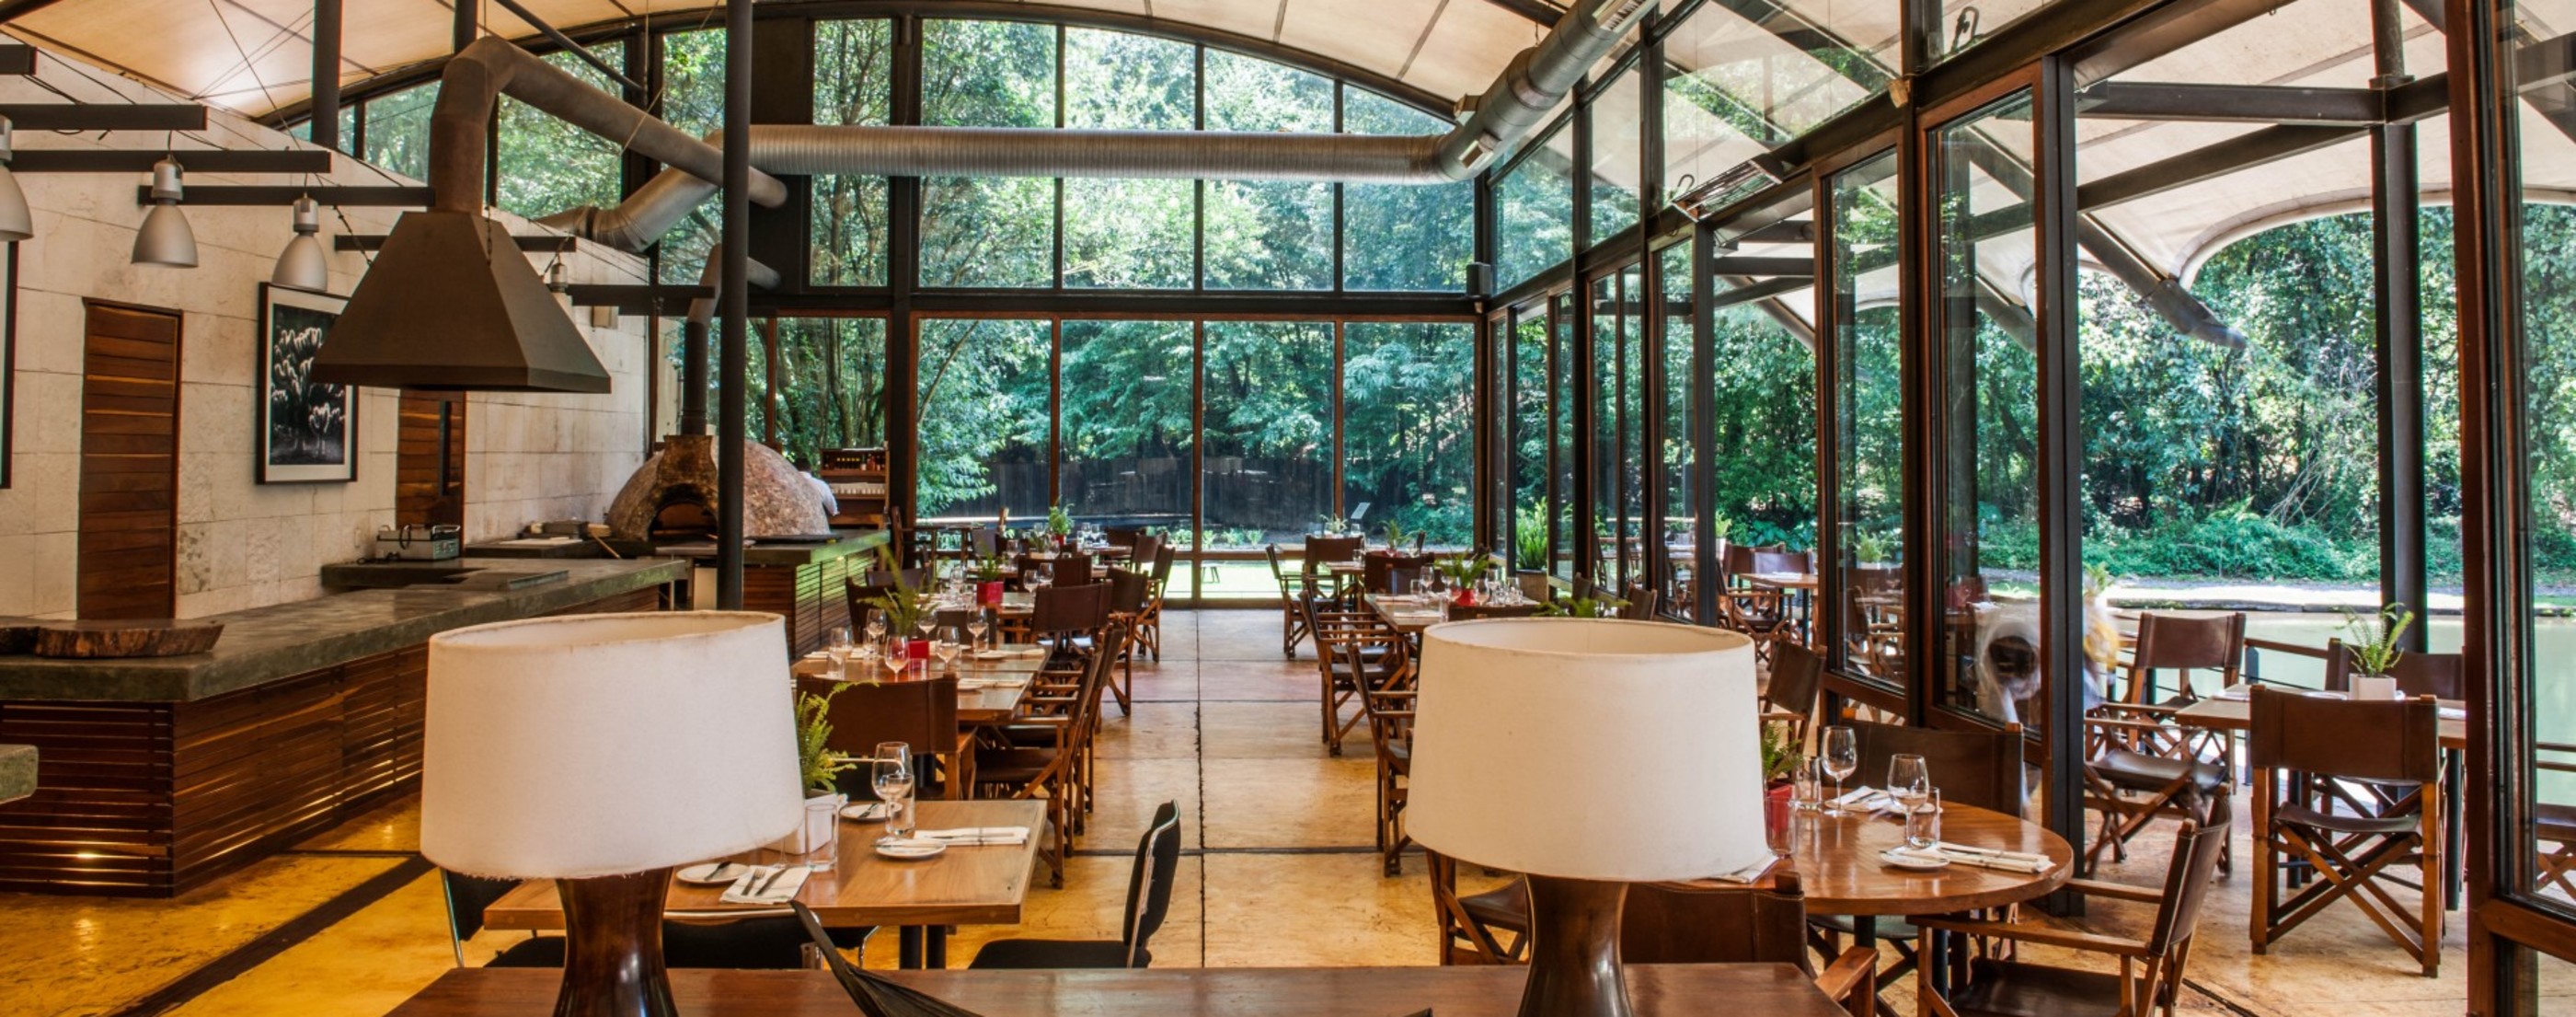 Restaurante - Hotel Rodavento - Valle de Bravo - México